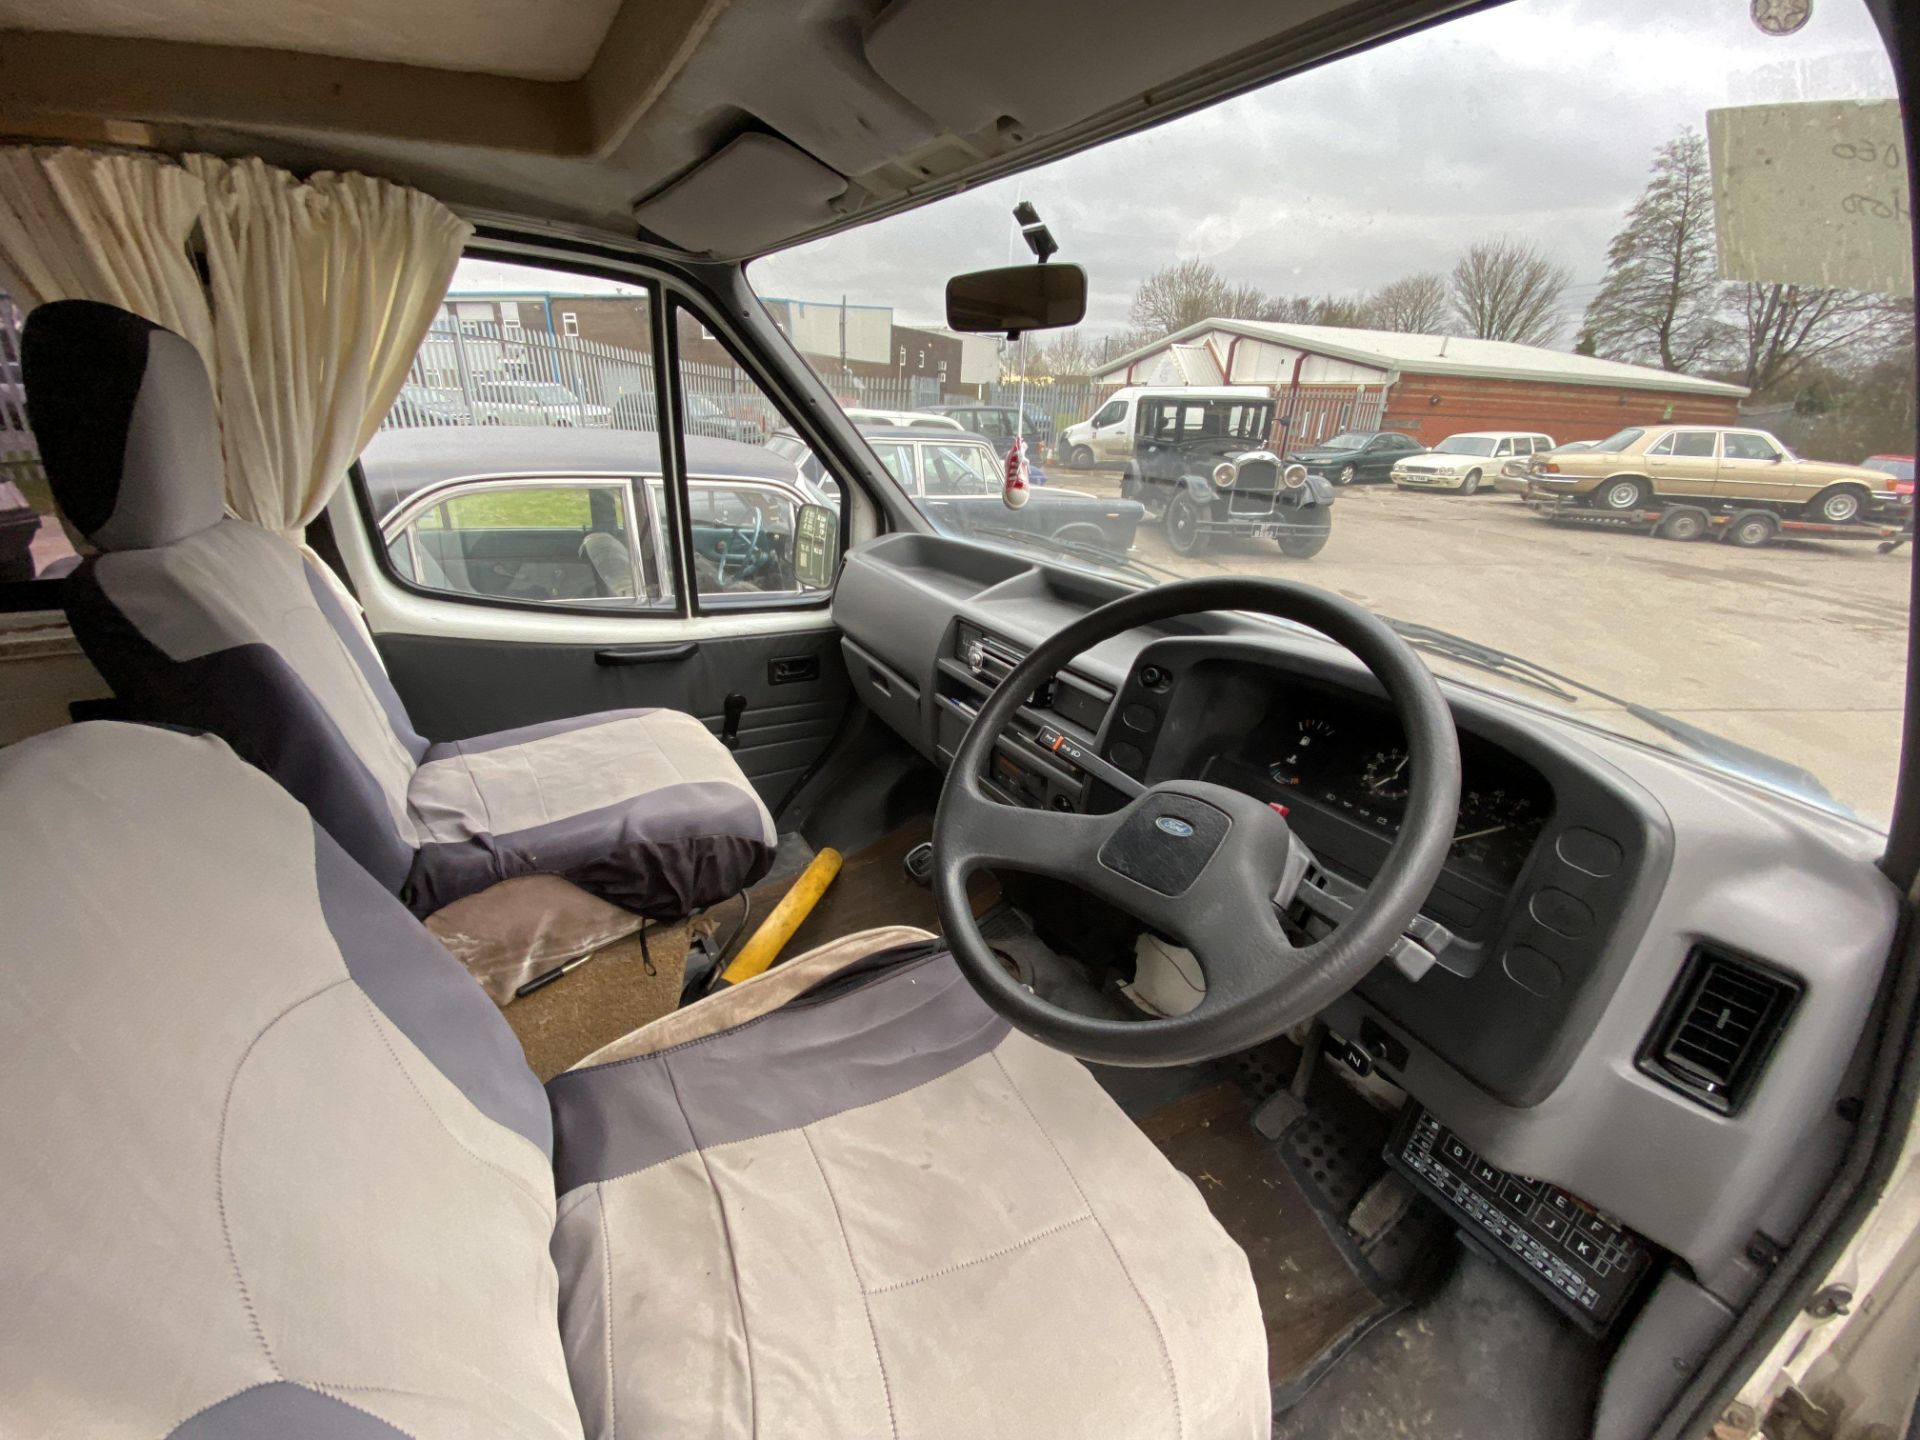 Ford Transit Camper - Image 17 of 25